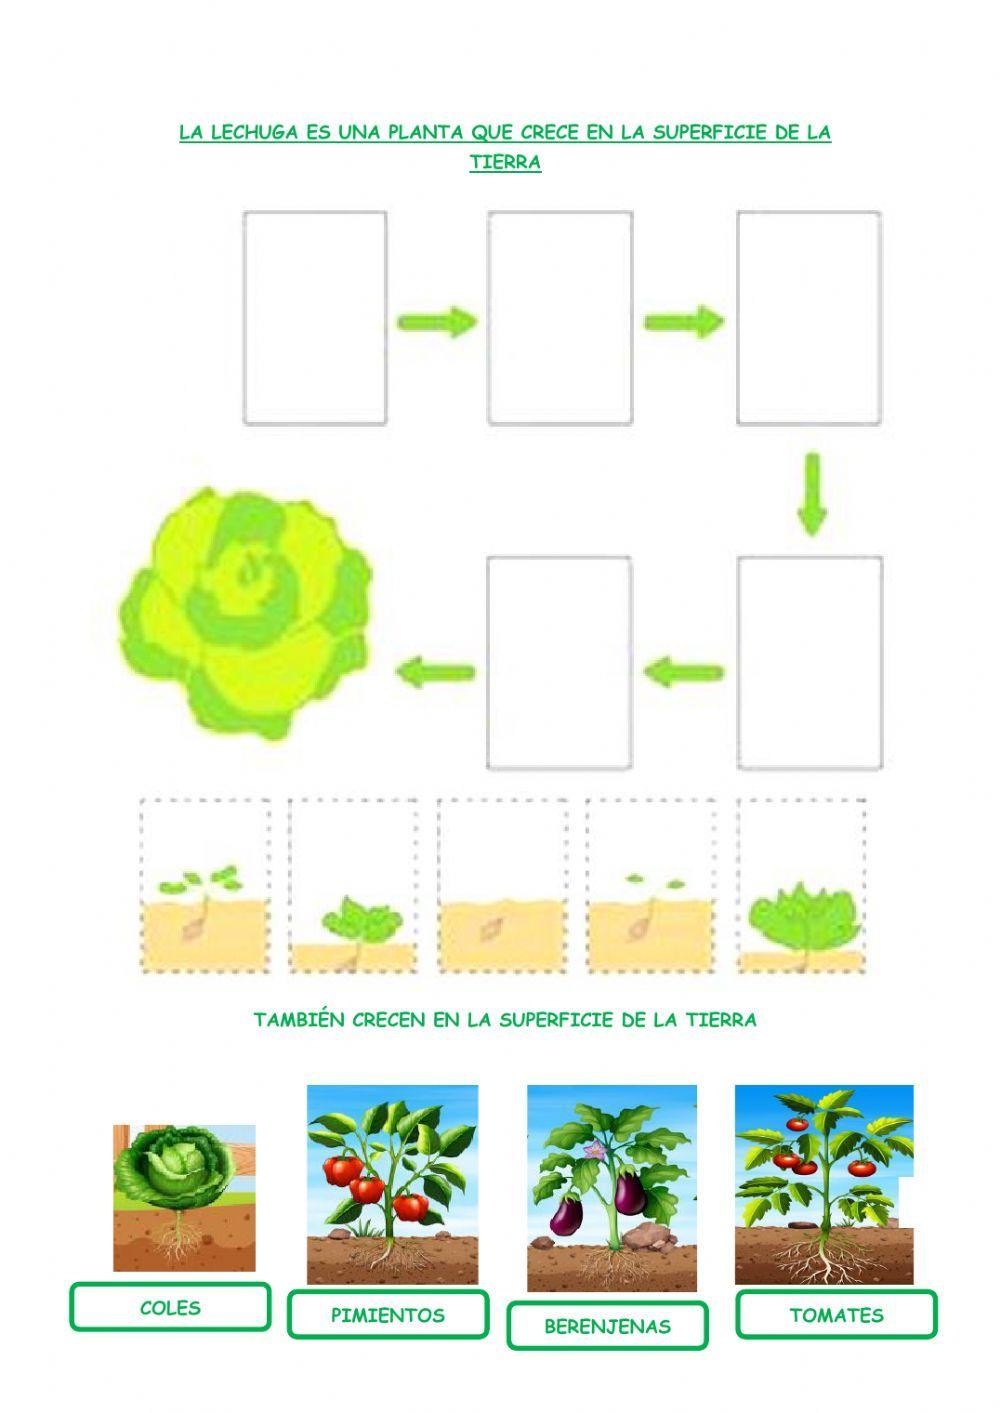 Las plantas. verduras y hortalizas